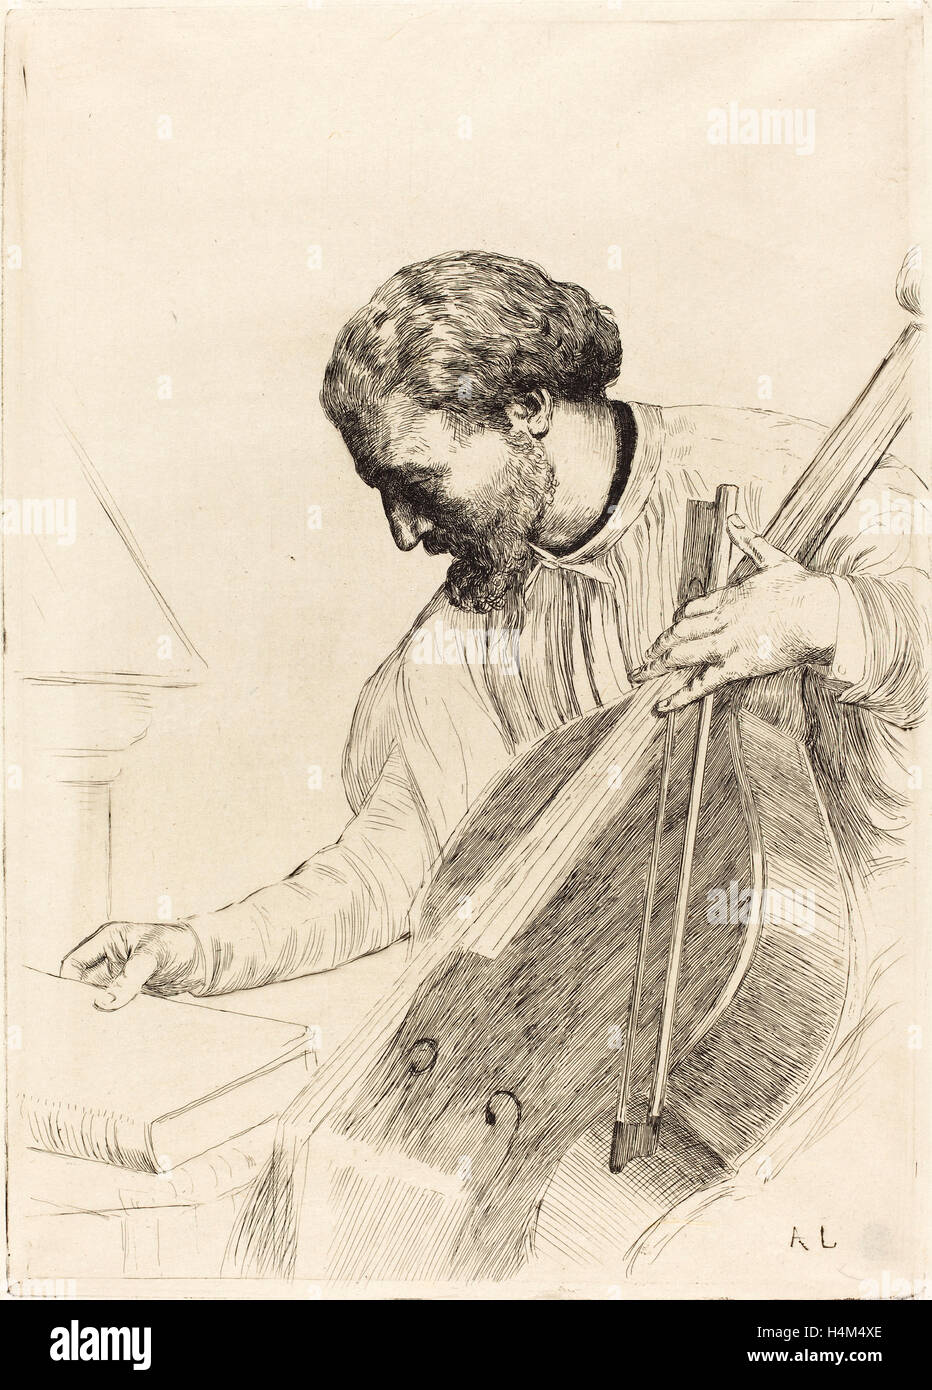 Alphonse Legros, Contre-bass Player (Le joueur de contre-basse), French, 1837 - 1911, etching Stock Photo